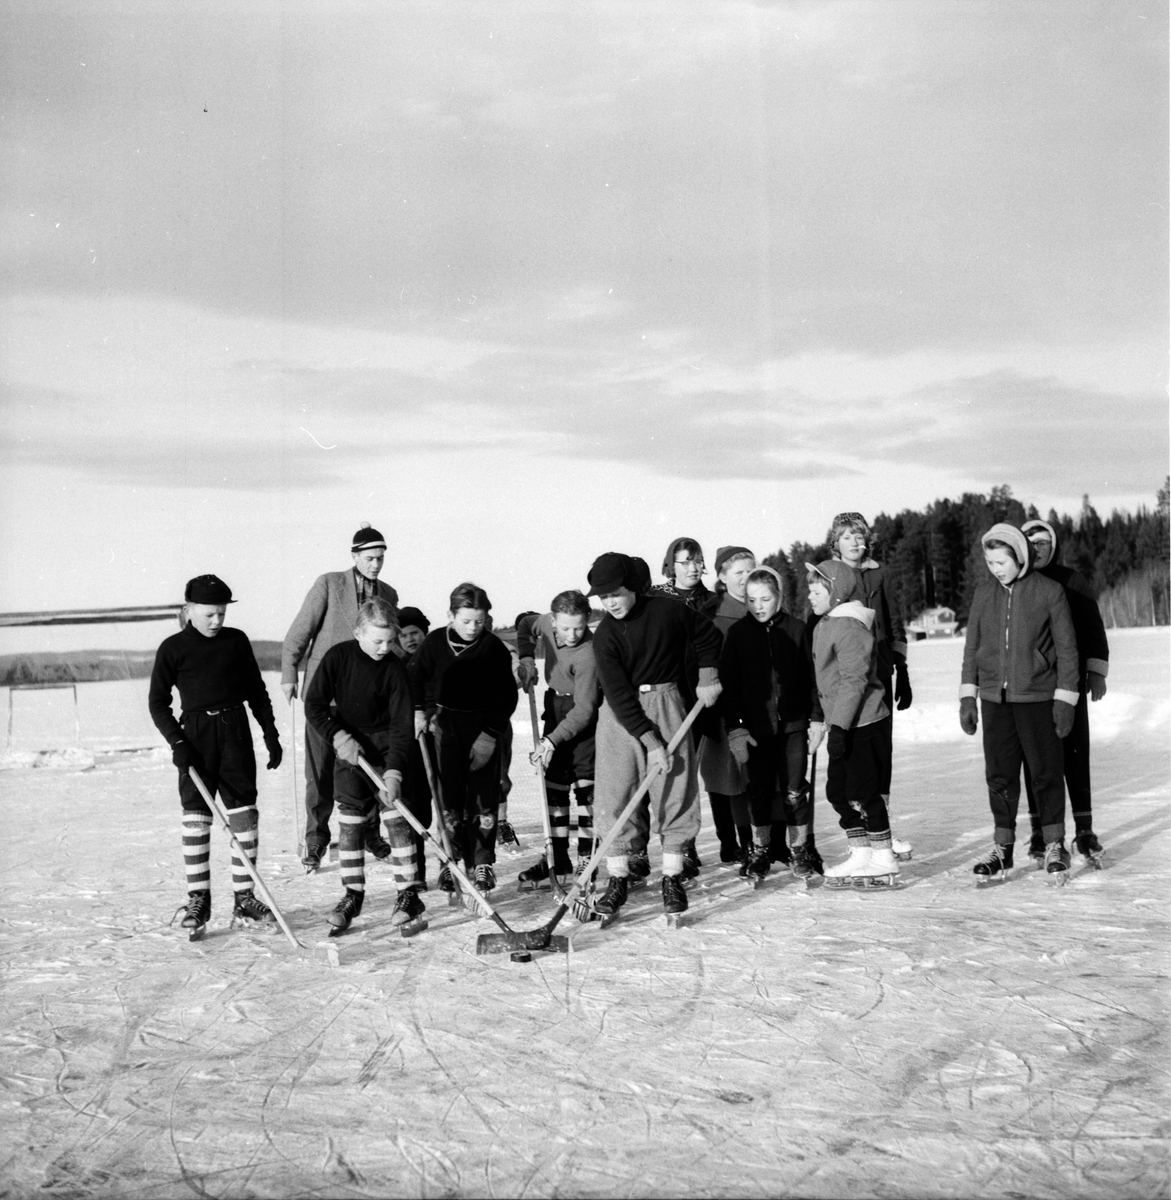 Skolbarn, affären, skogskörare i Skräddrabo.
18/1 1957